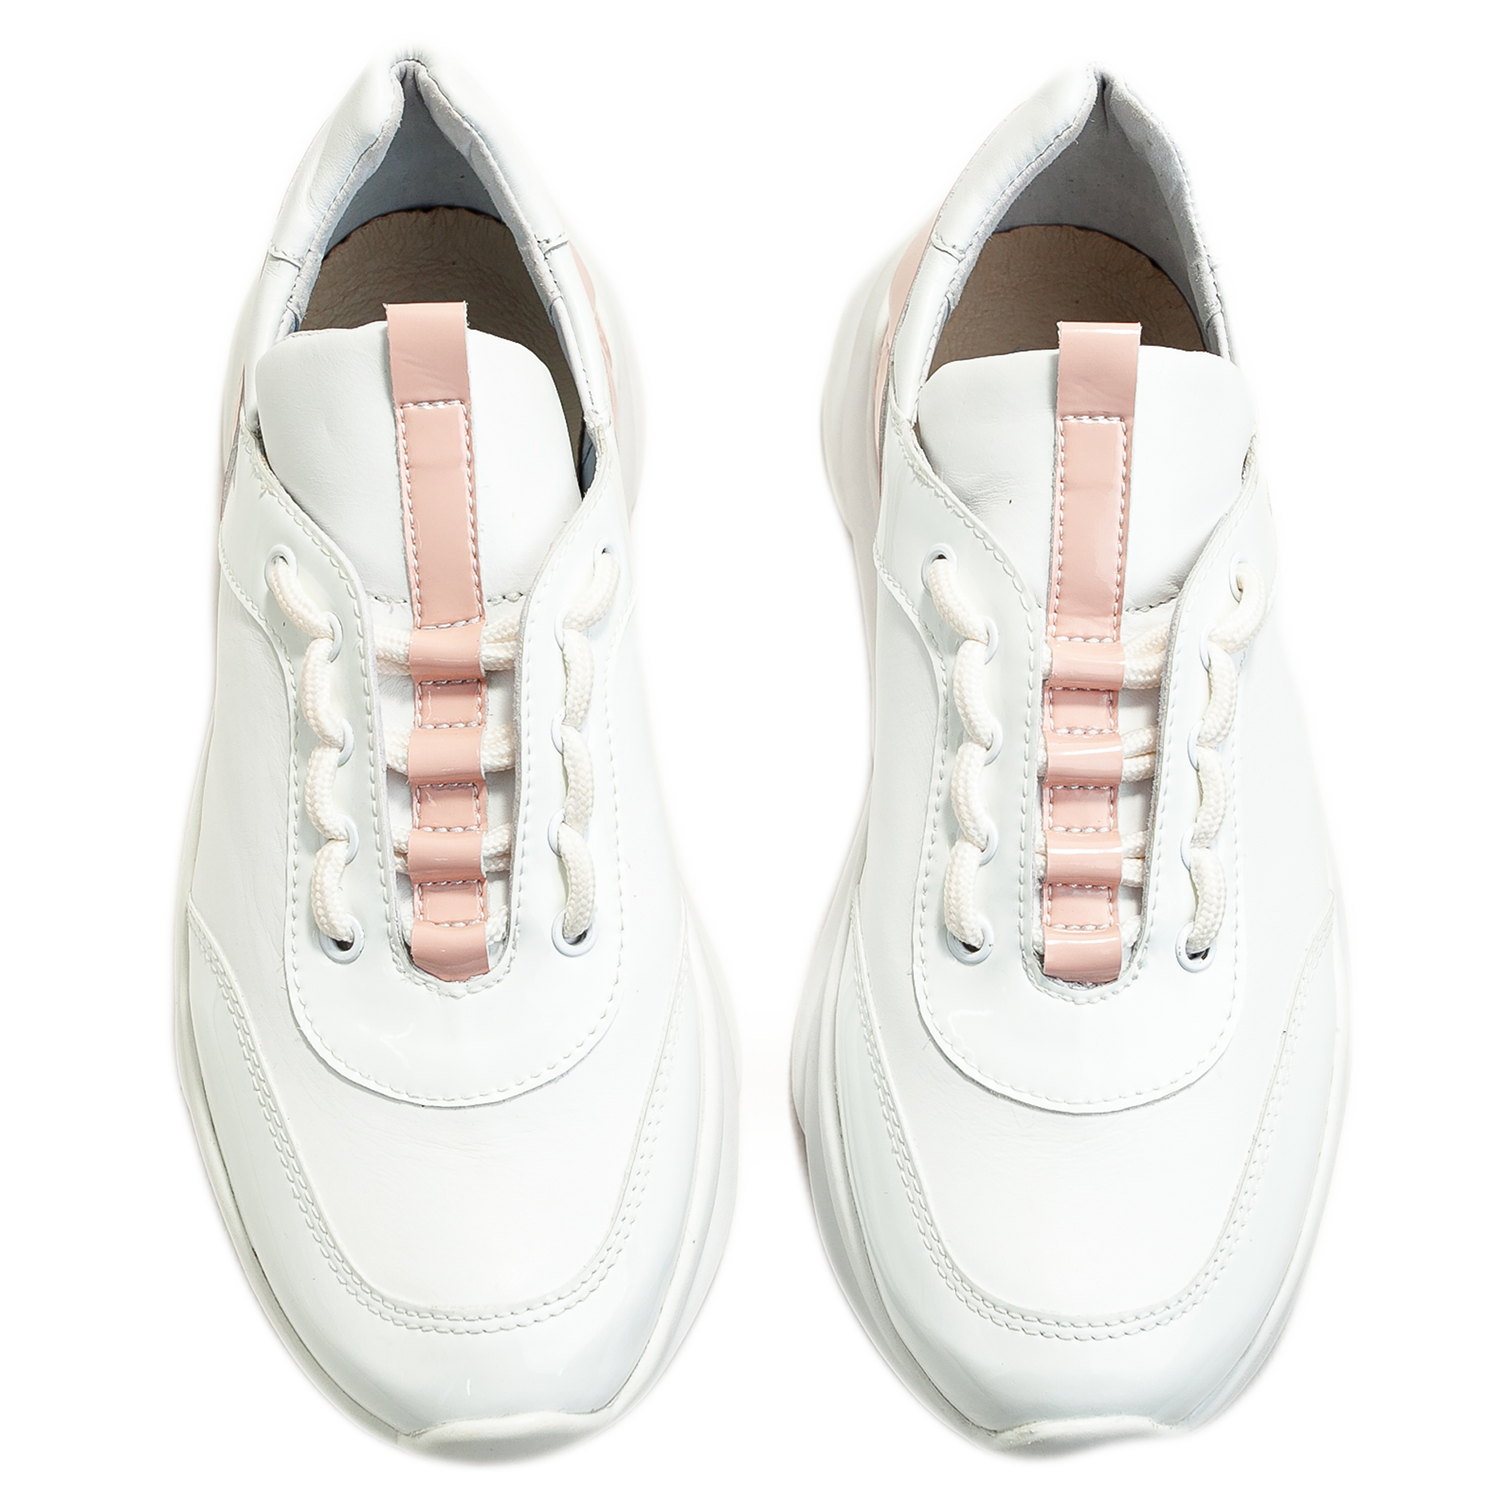 Жіночі кросівки із натуральної шкіри БЕЛСТА - 2